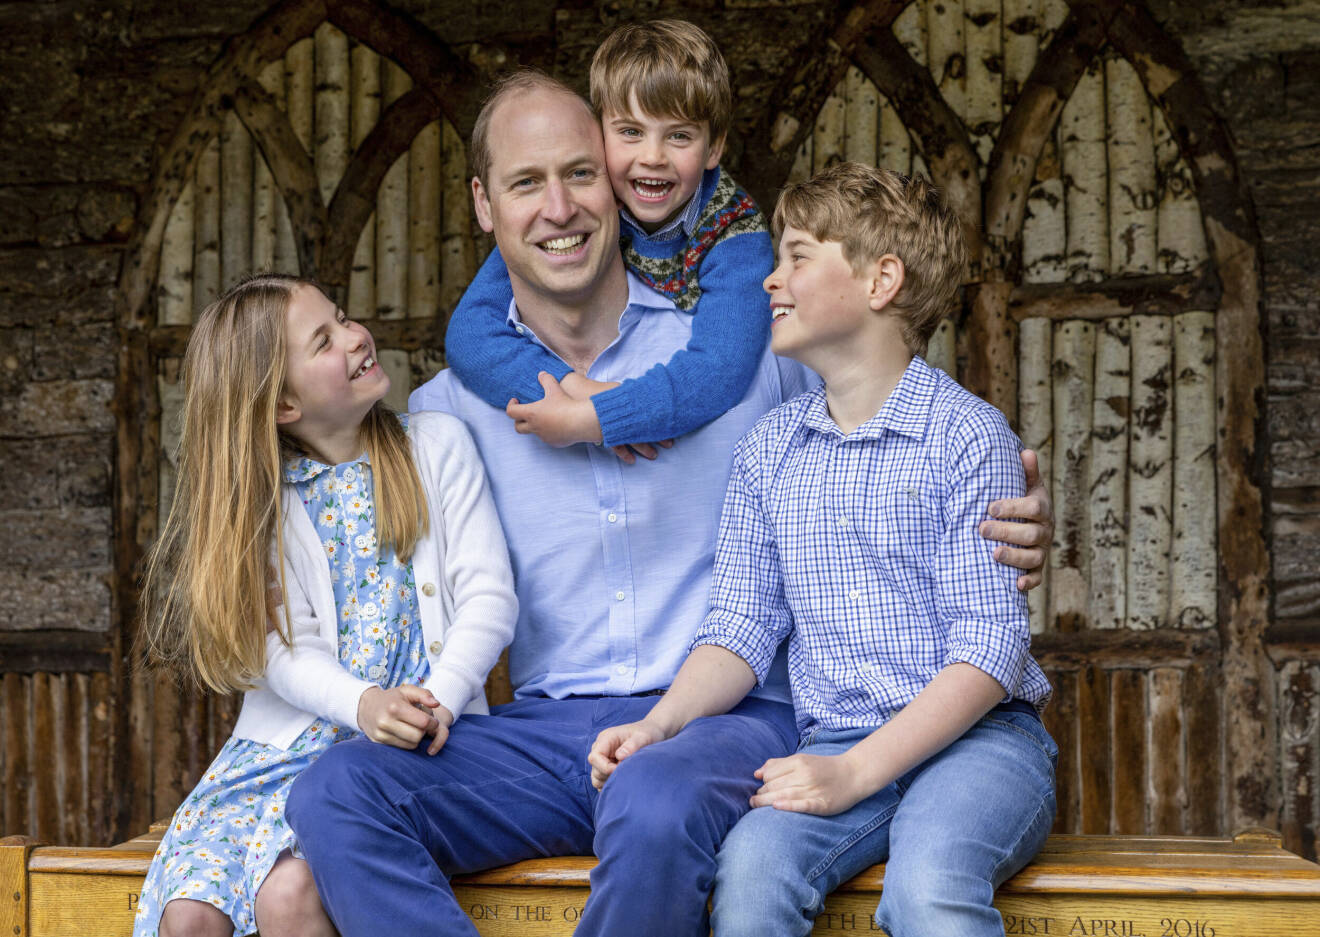 Prins William ihop med de tre barnen Louis, Charlotte och George som sitter på en bänk